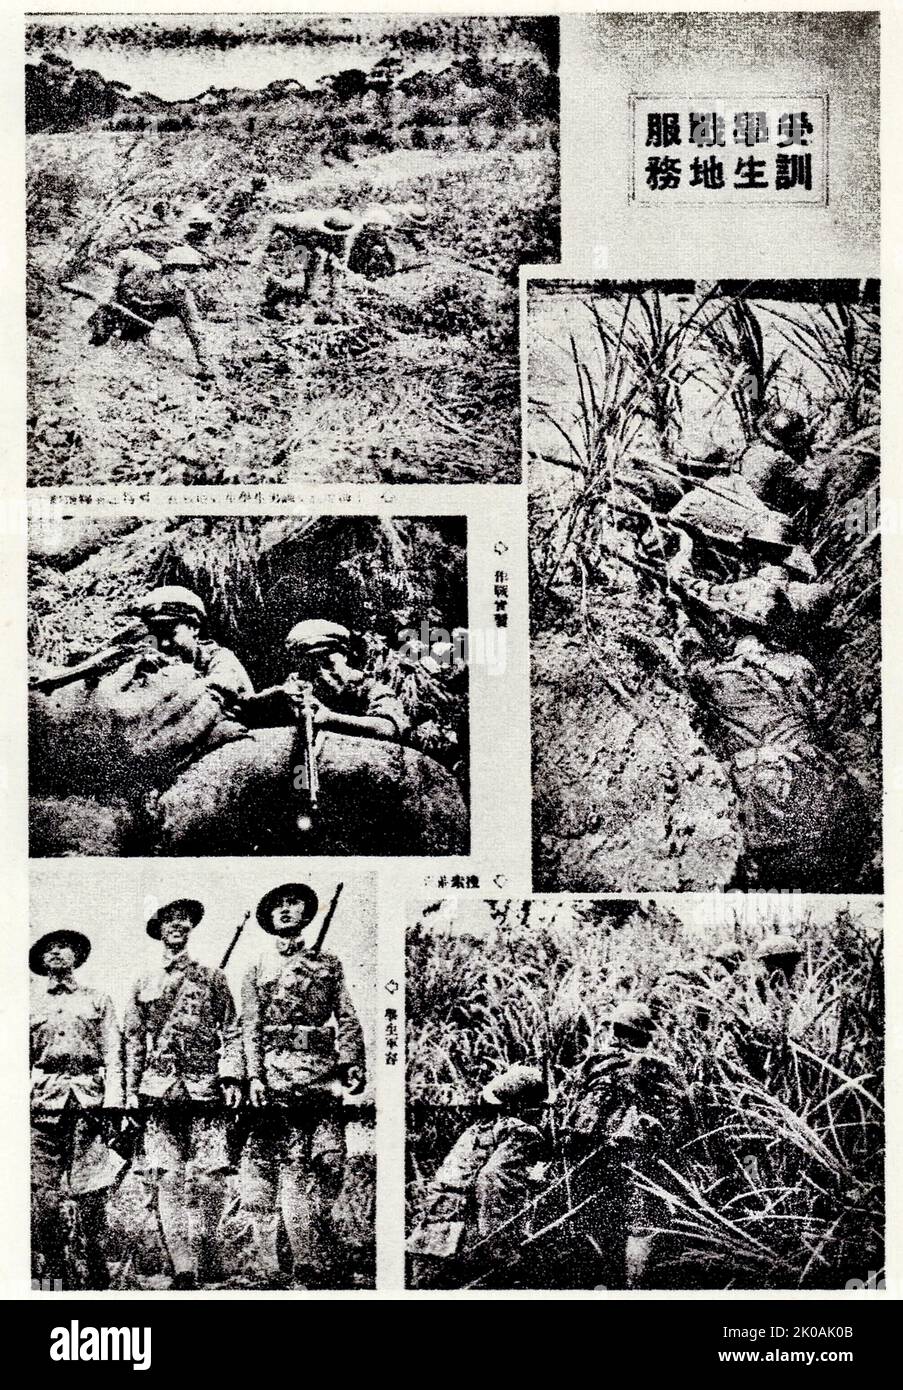 Freiwillige Studenten in der militärischen Ausbildung. Dies geschah während der japanischen Invasion in China. Stockfoto